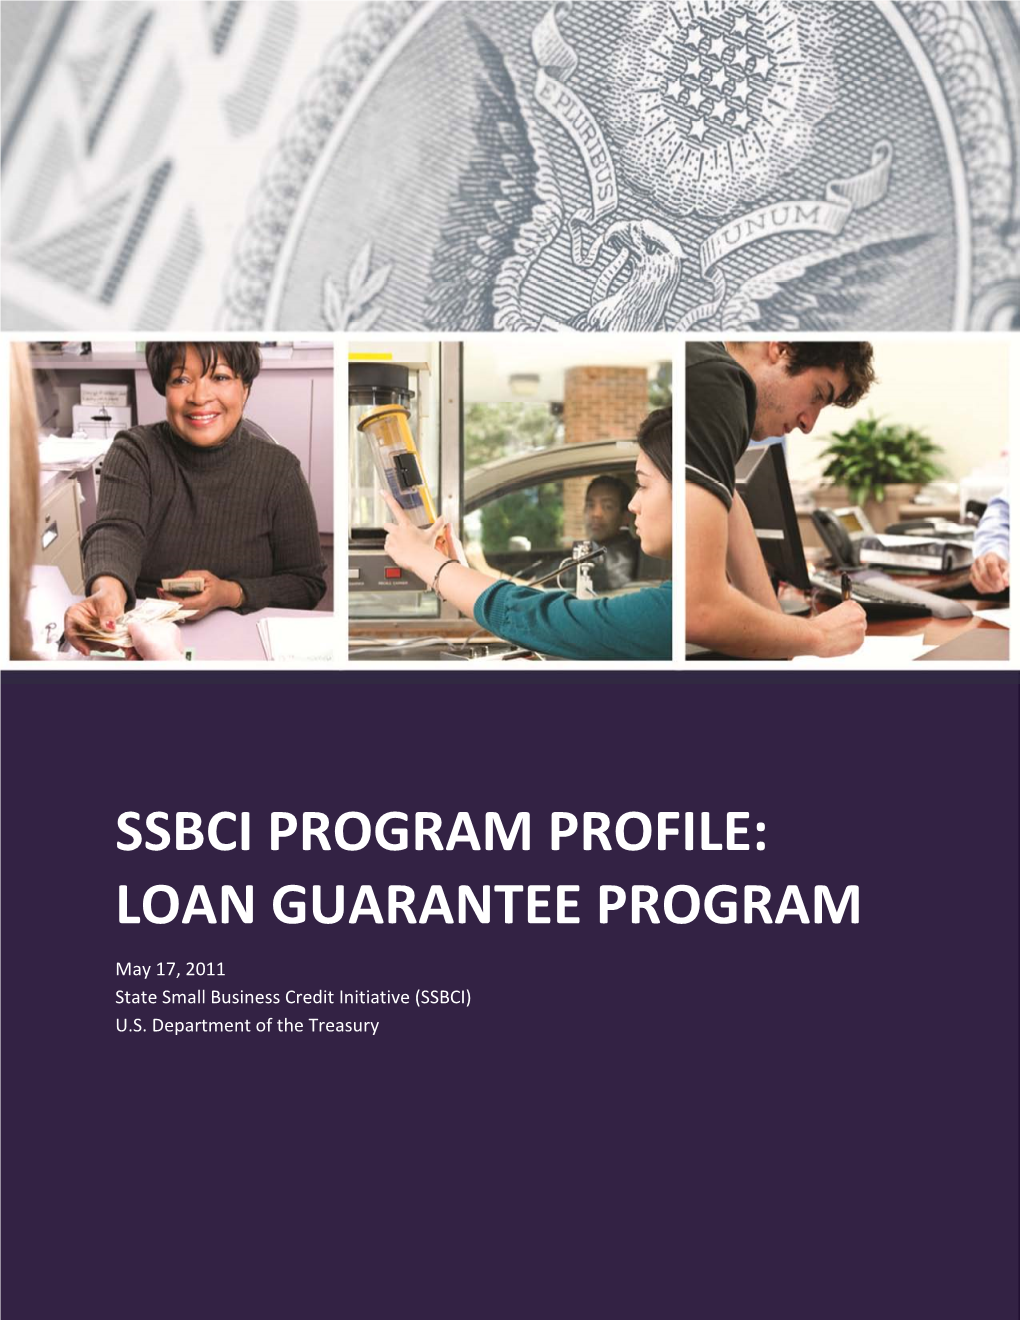 Loan Guarantee Program